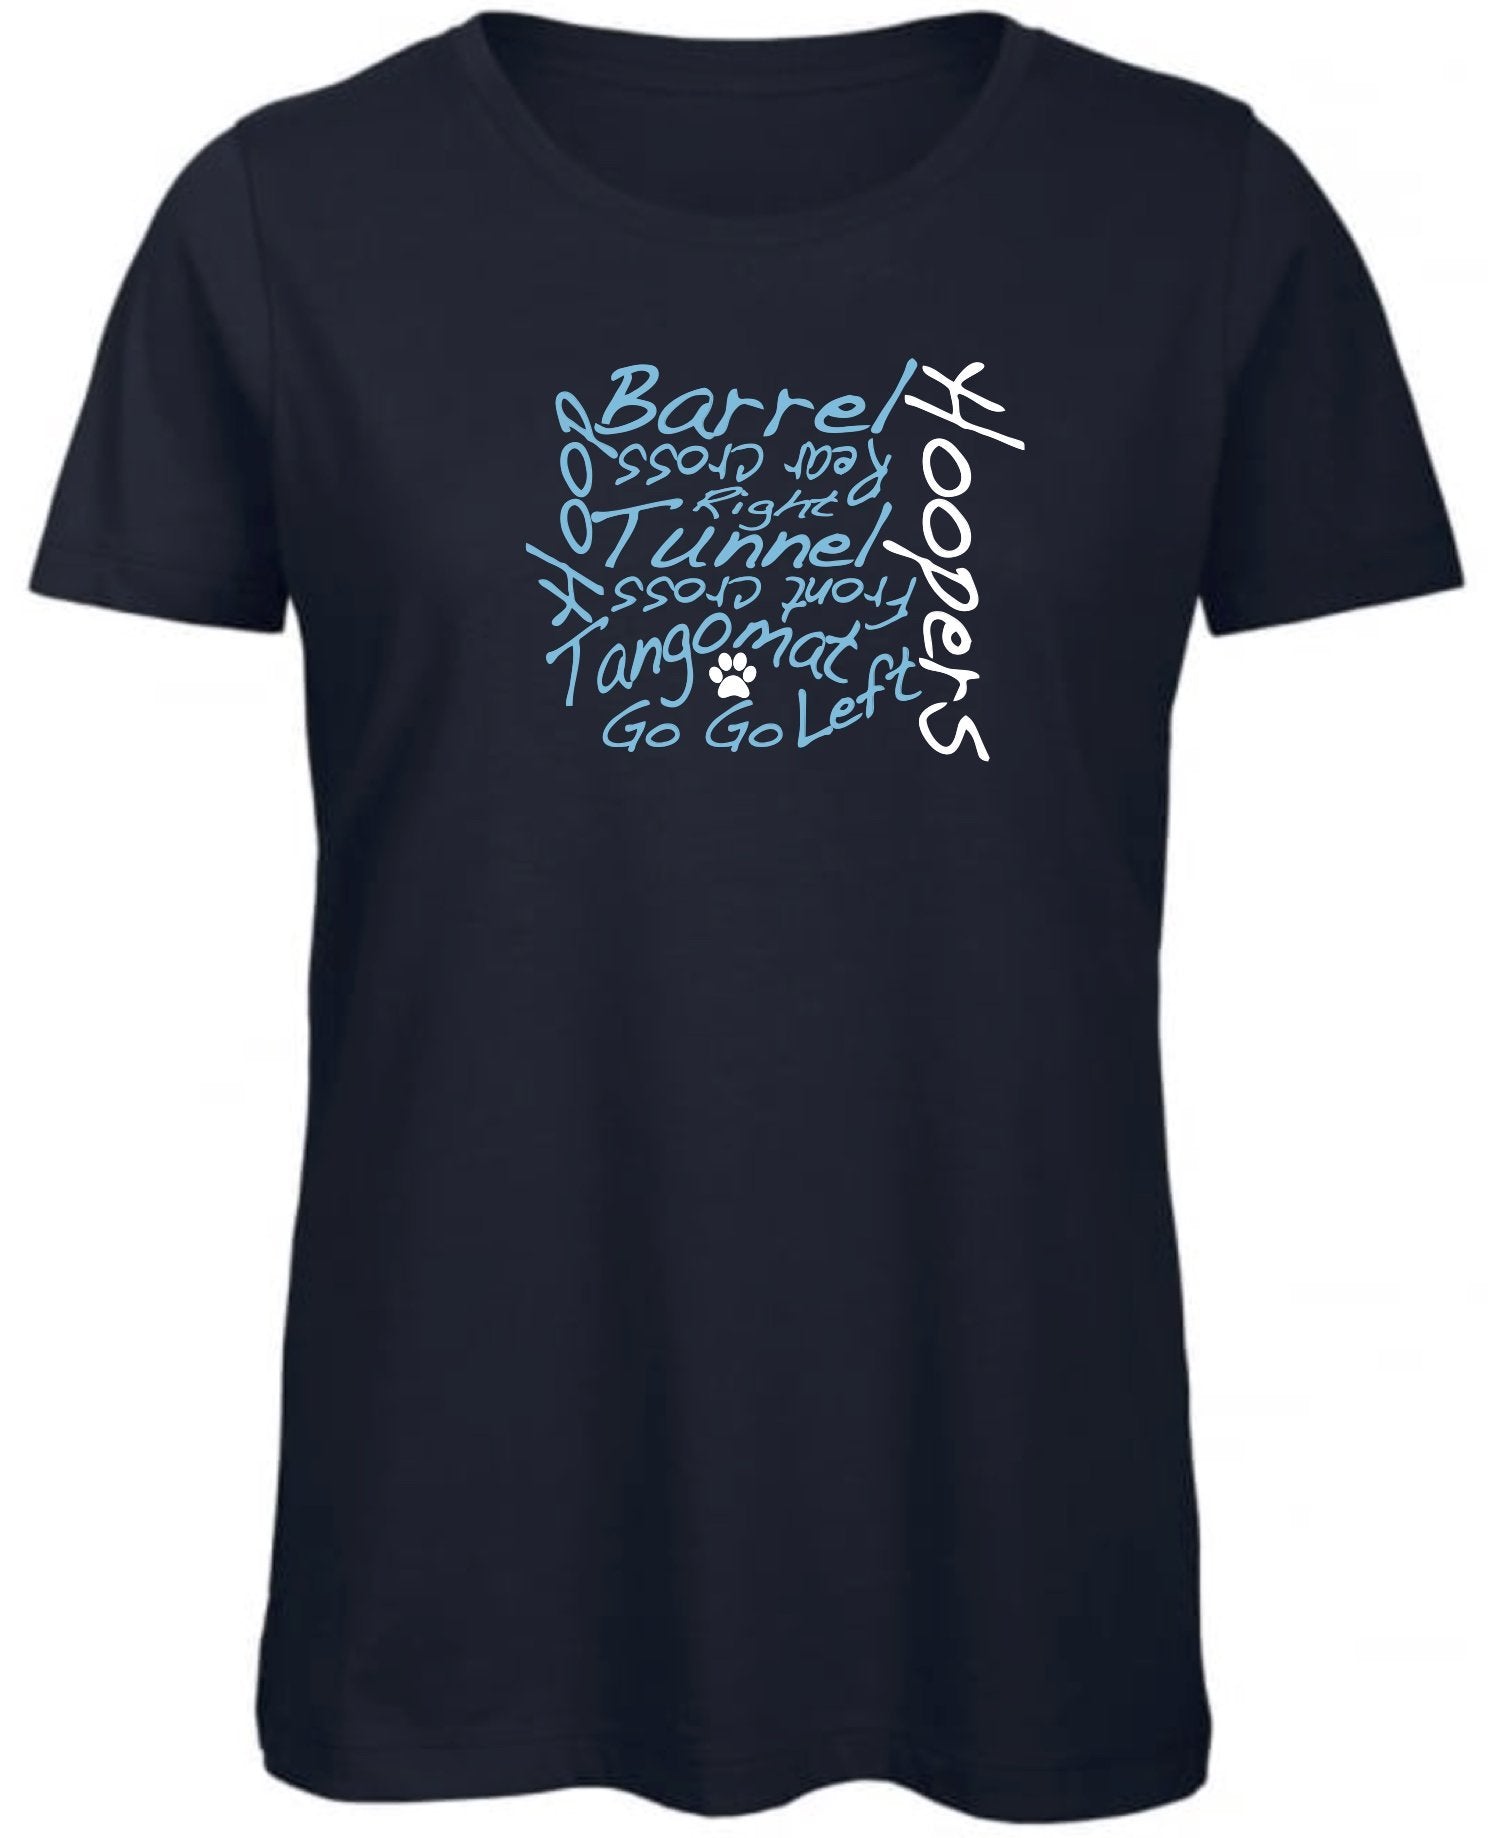 Hoopers Words Women's T-Shirt - Pooch-